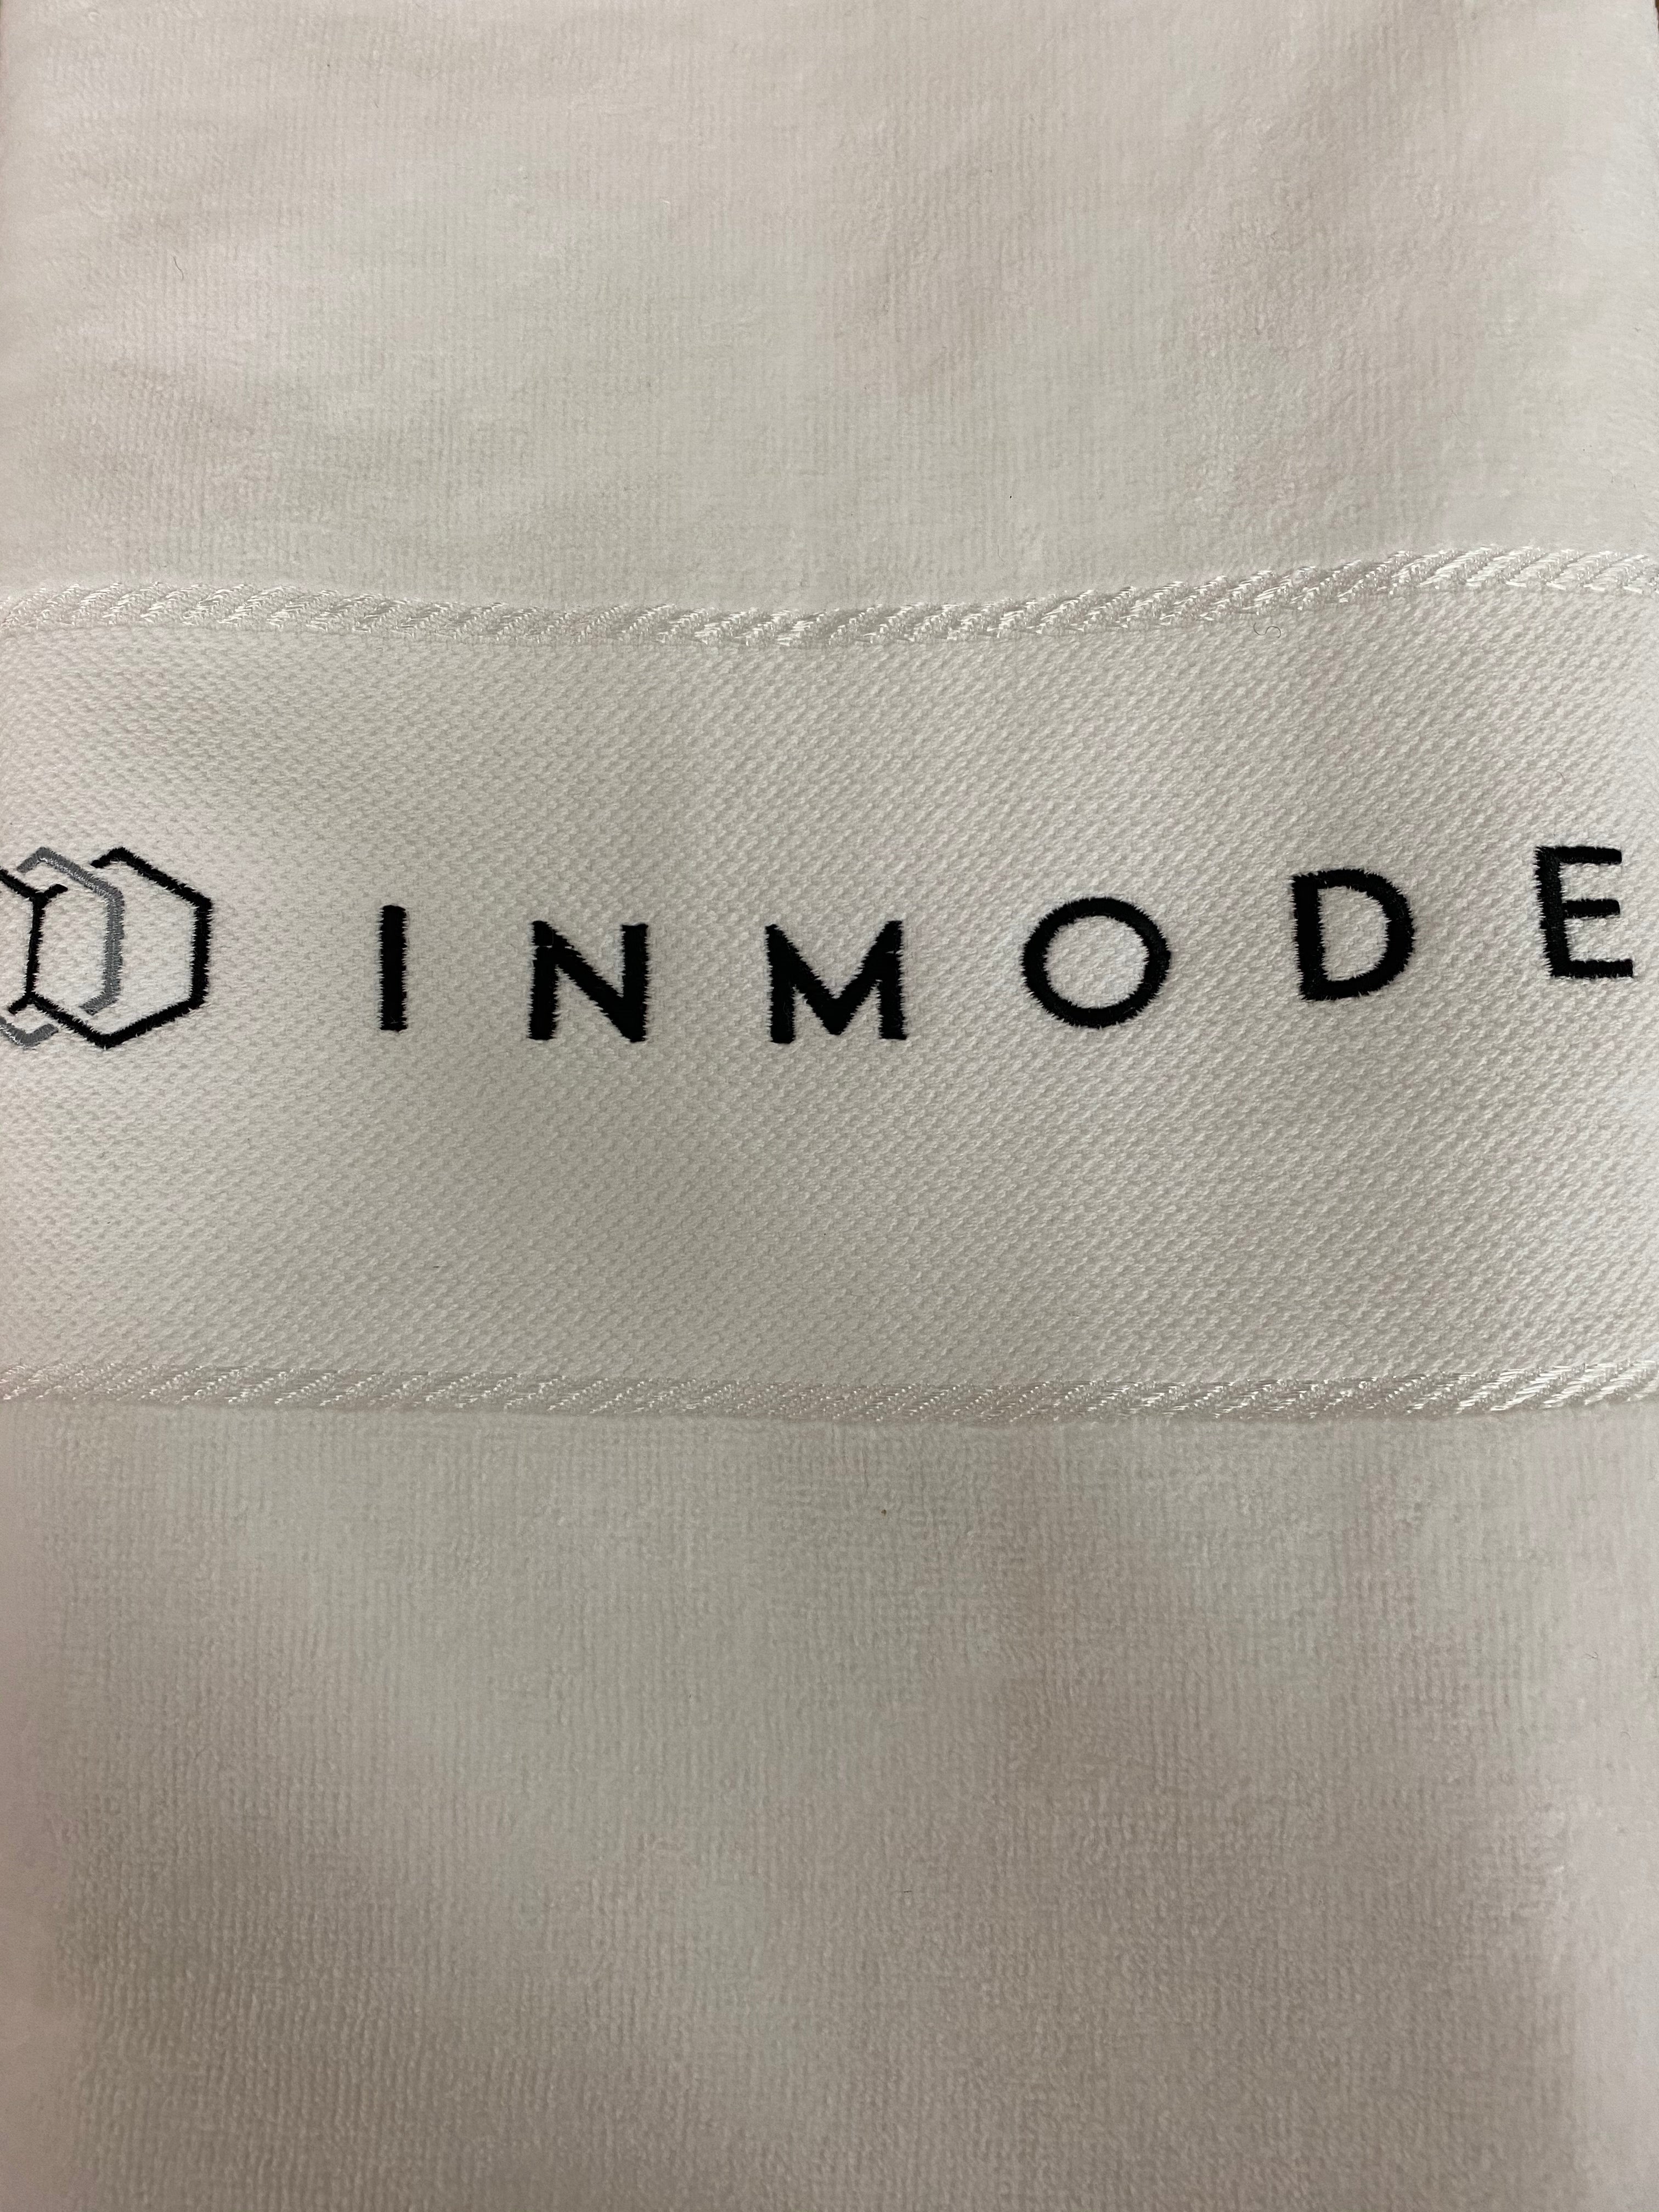 InMode branded Towels